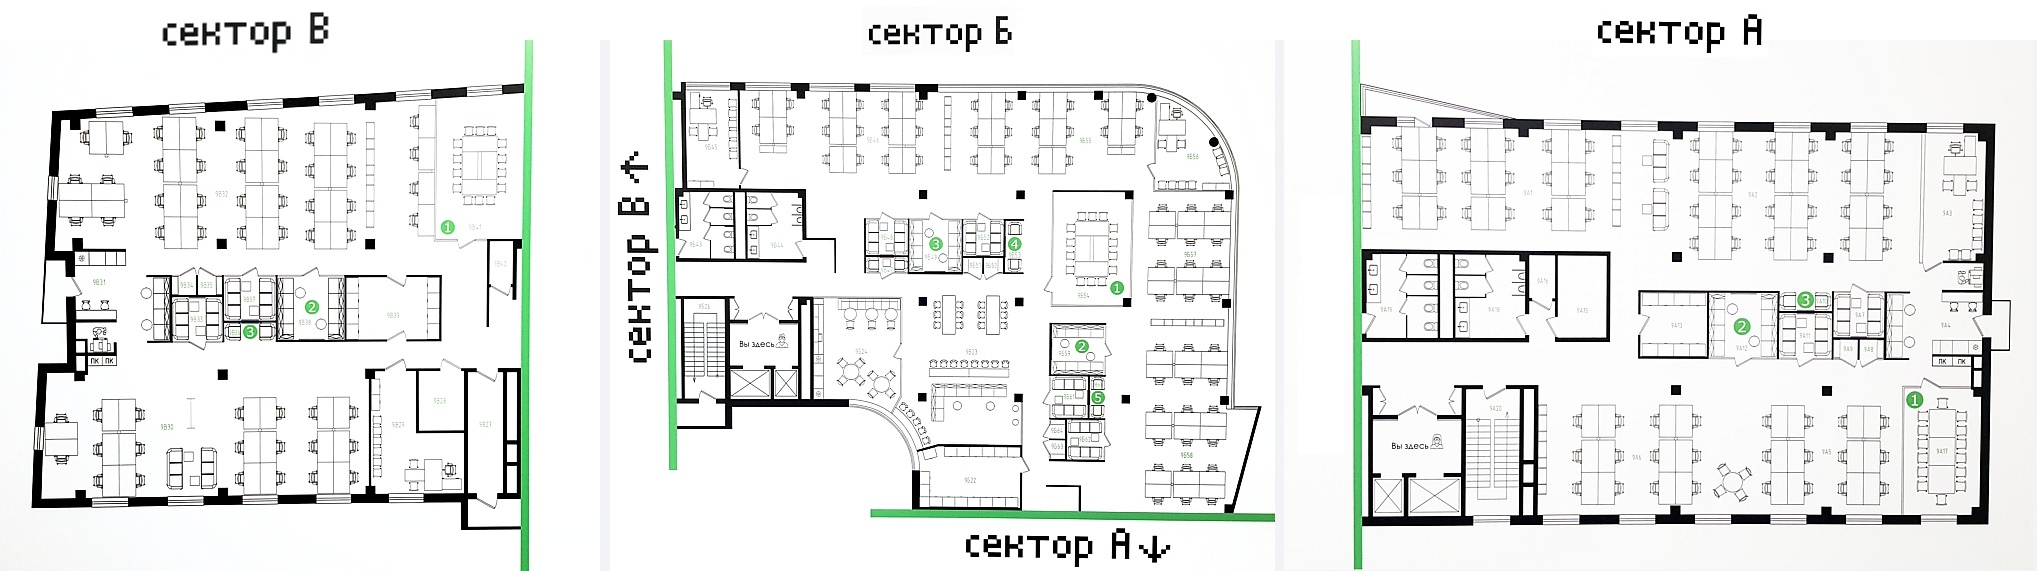 Каждый этаж разделен на три зоны. У agile-этажей по периметру расположены опенспейсы, а в центре размещены сателлитные зоны, переговорки и коридоры